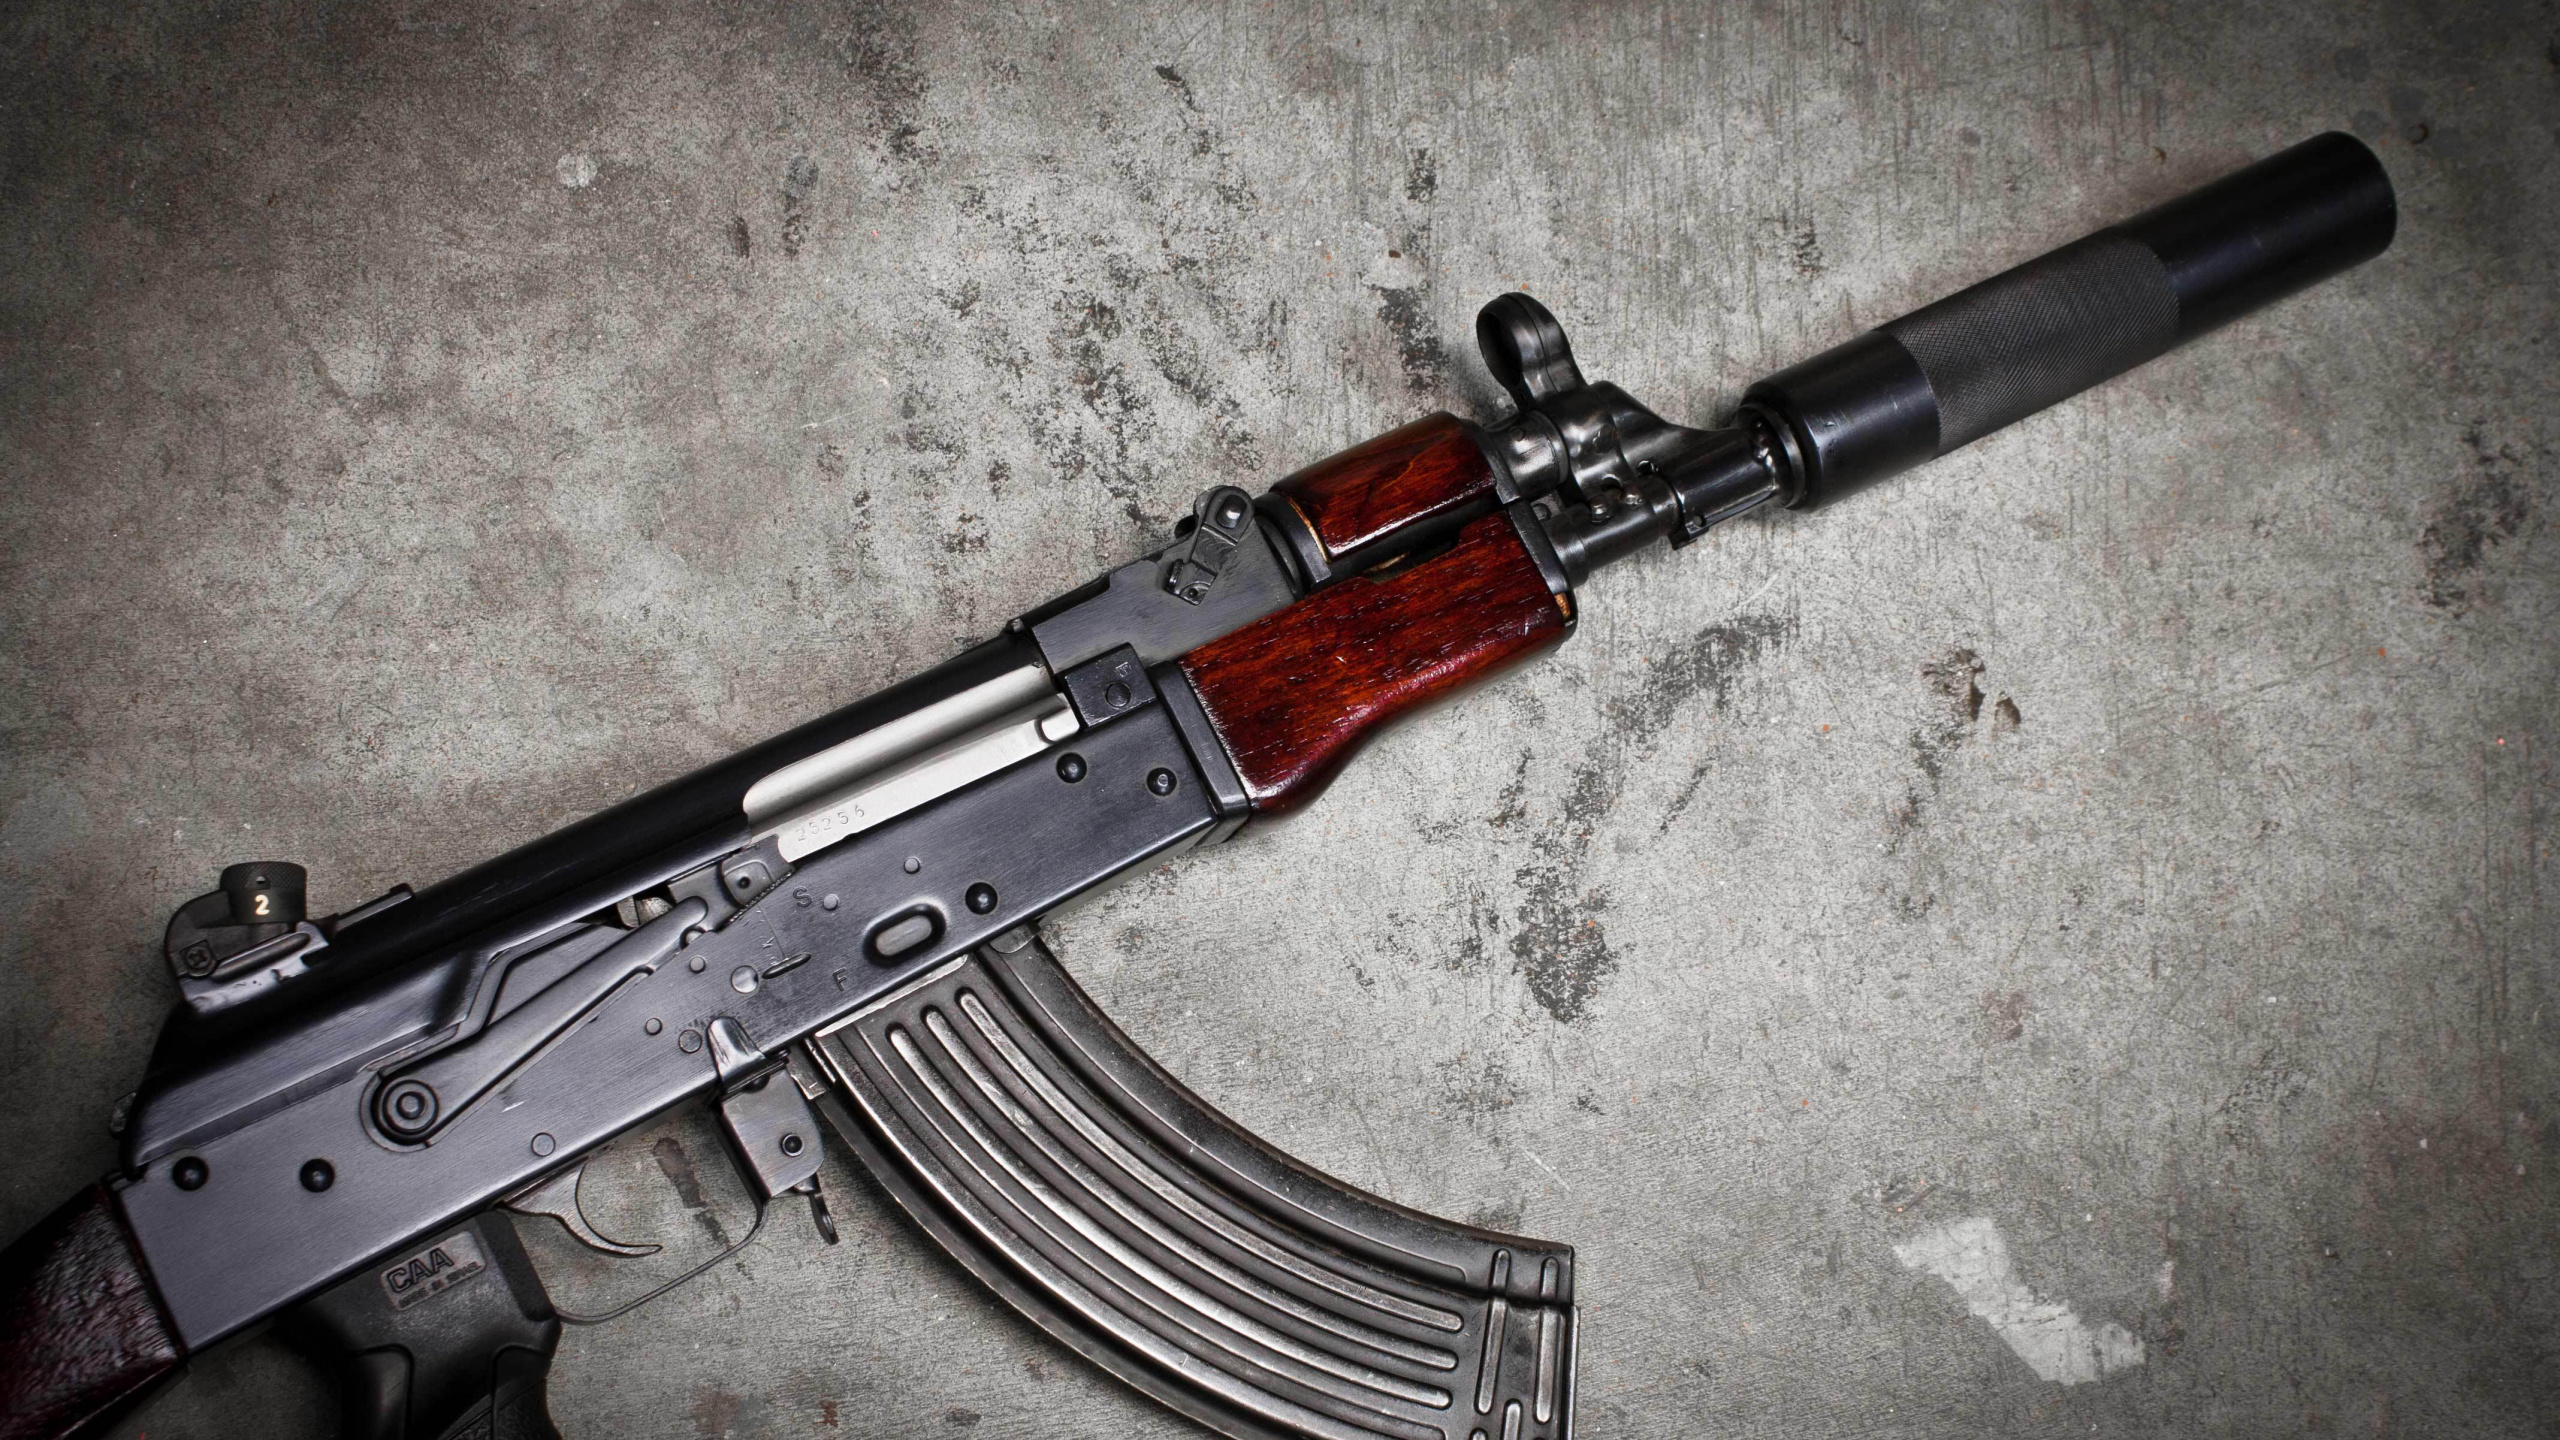 Ak-74, AKS-74U, 枪, 枪支, 触发器 壁纸 2560x1440 允许